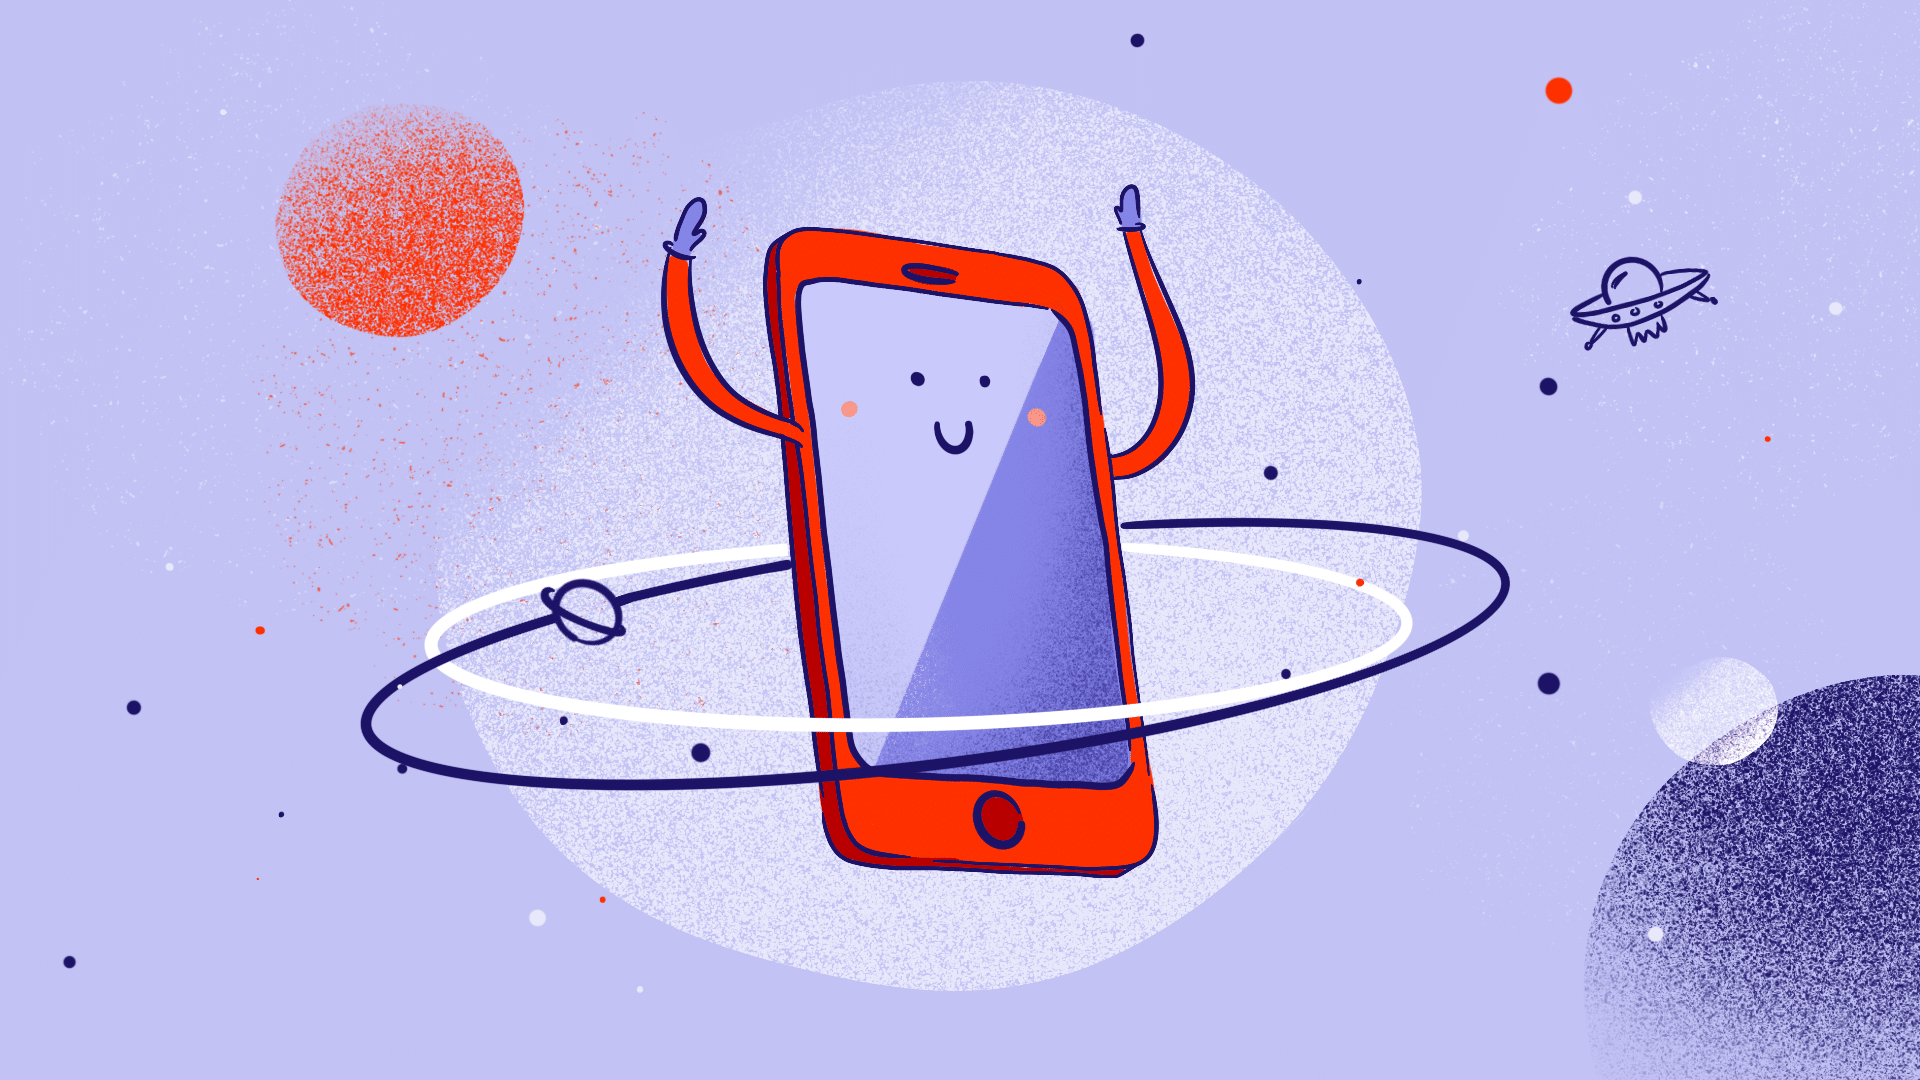 Uśmiechnięty smartfon z rączkami uniesionymi do góry. Wokół niego orbitują planety.